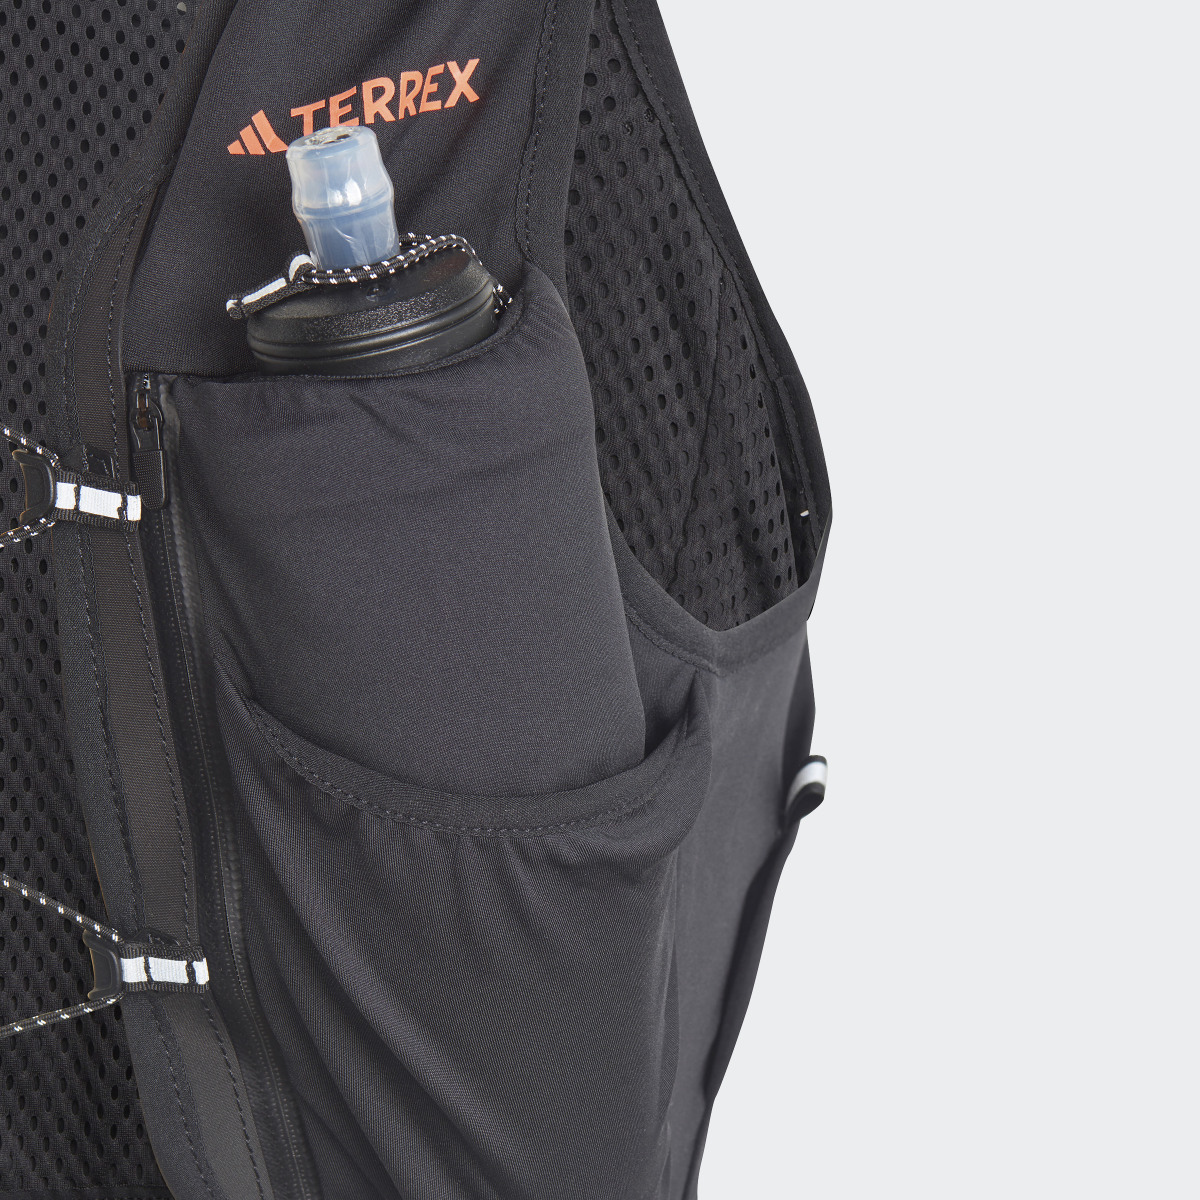 Adidas Terrex Trail Running Vest. 5